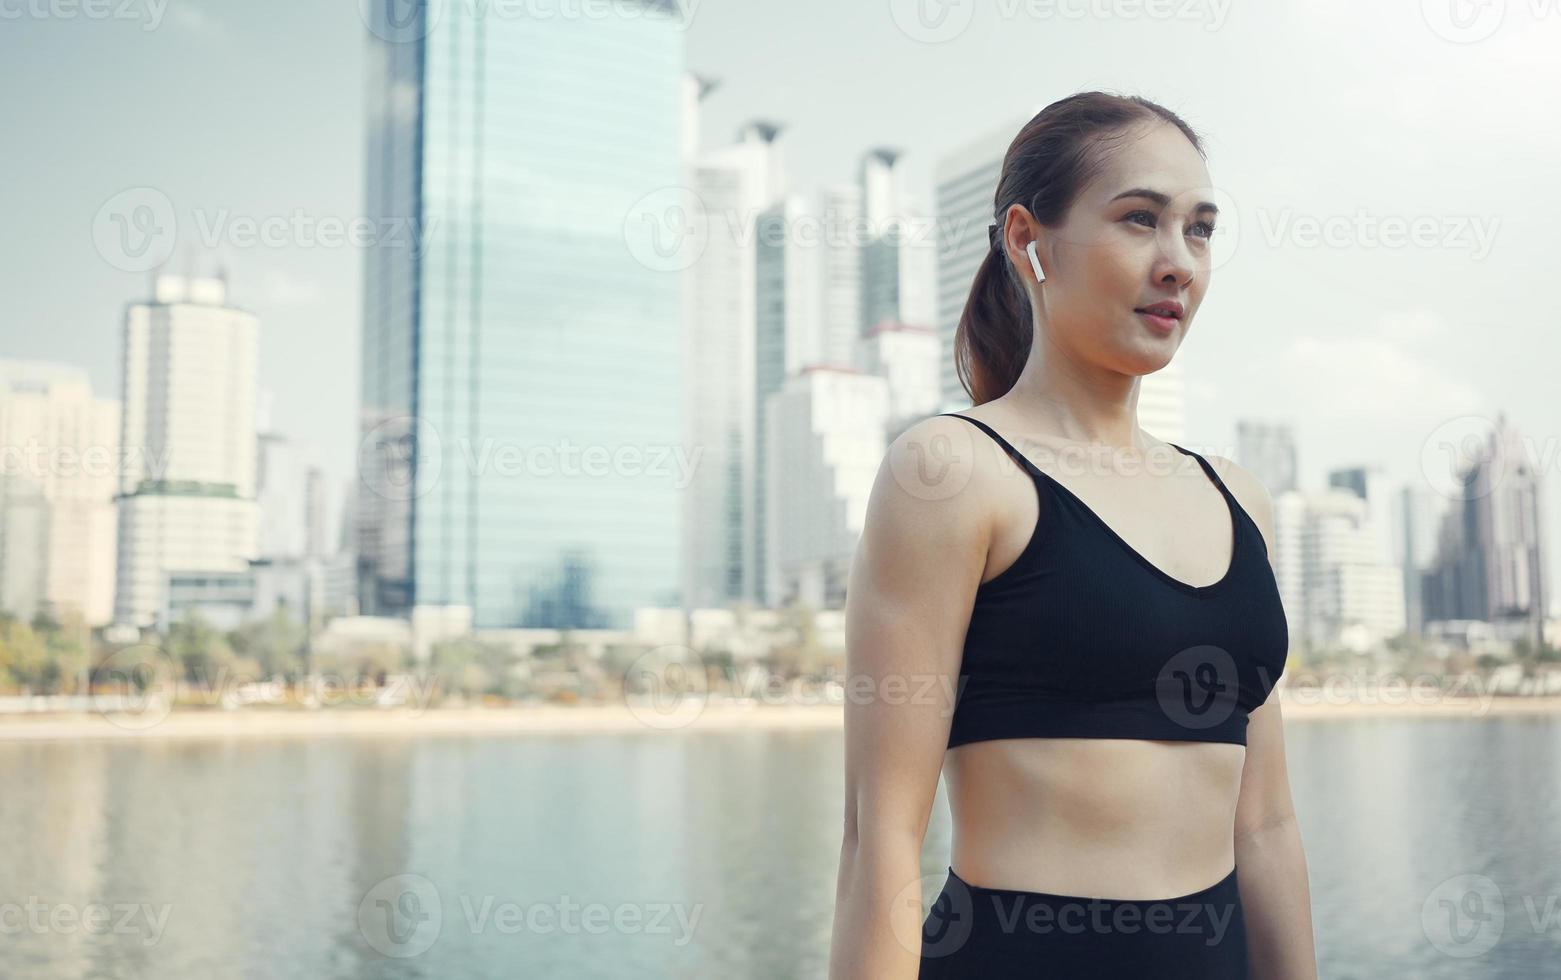 mujer deportiva usando auriculares inalámbricos y estirando los músculos antes de correr en la ciudad, ejercicio de calentamiento. foto